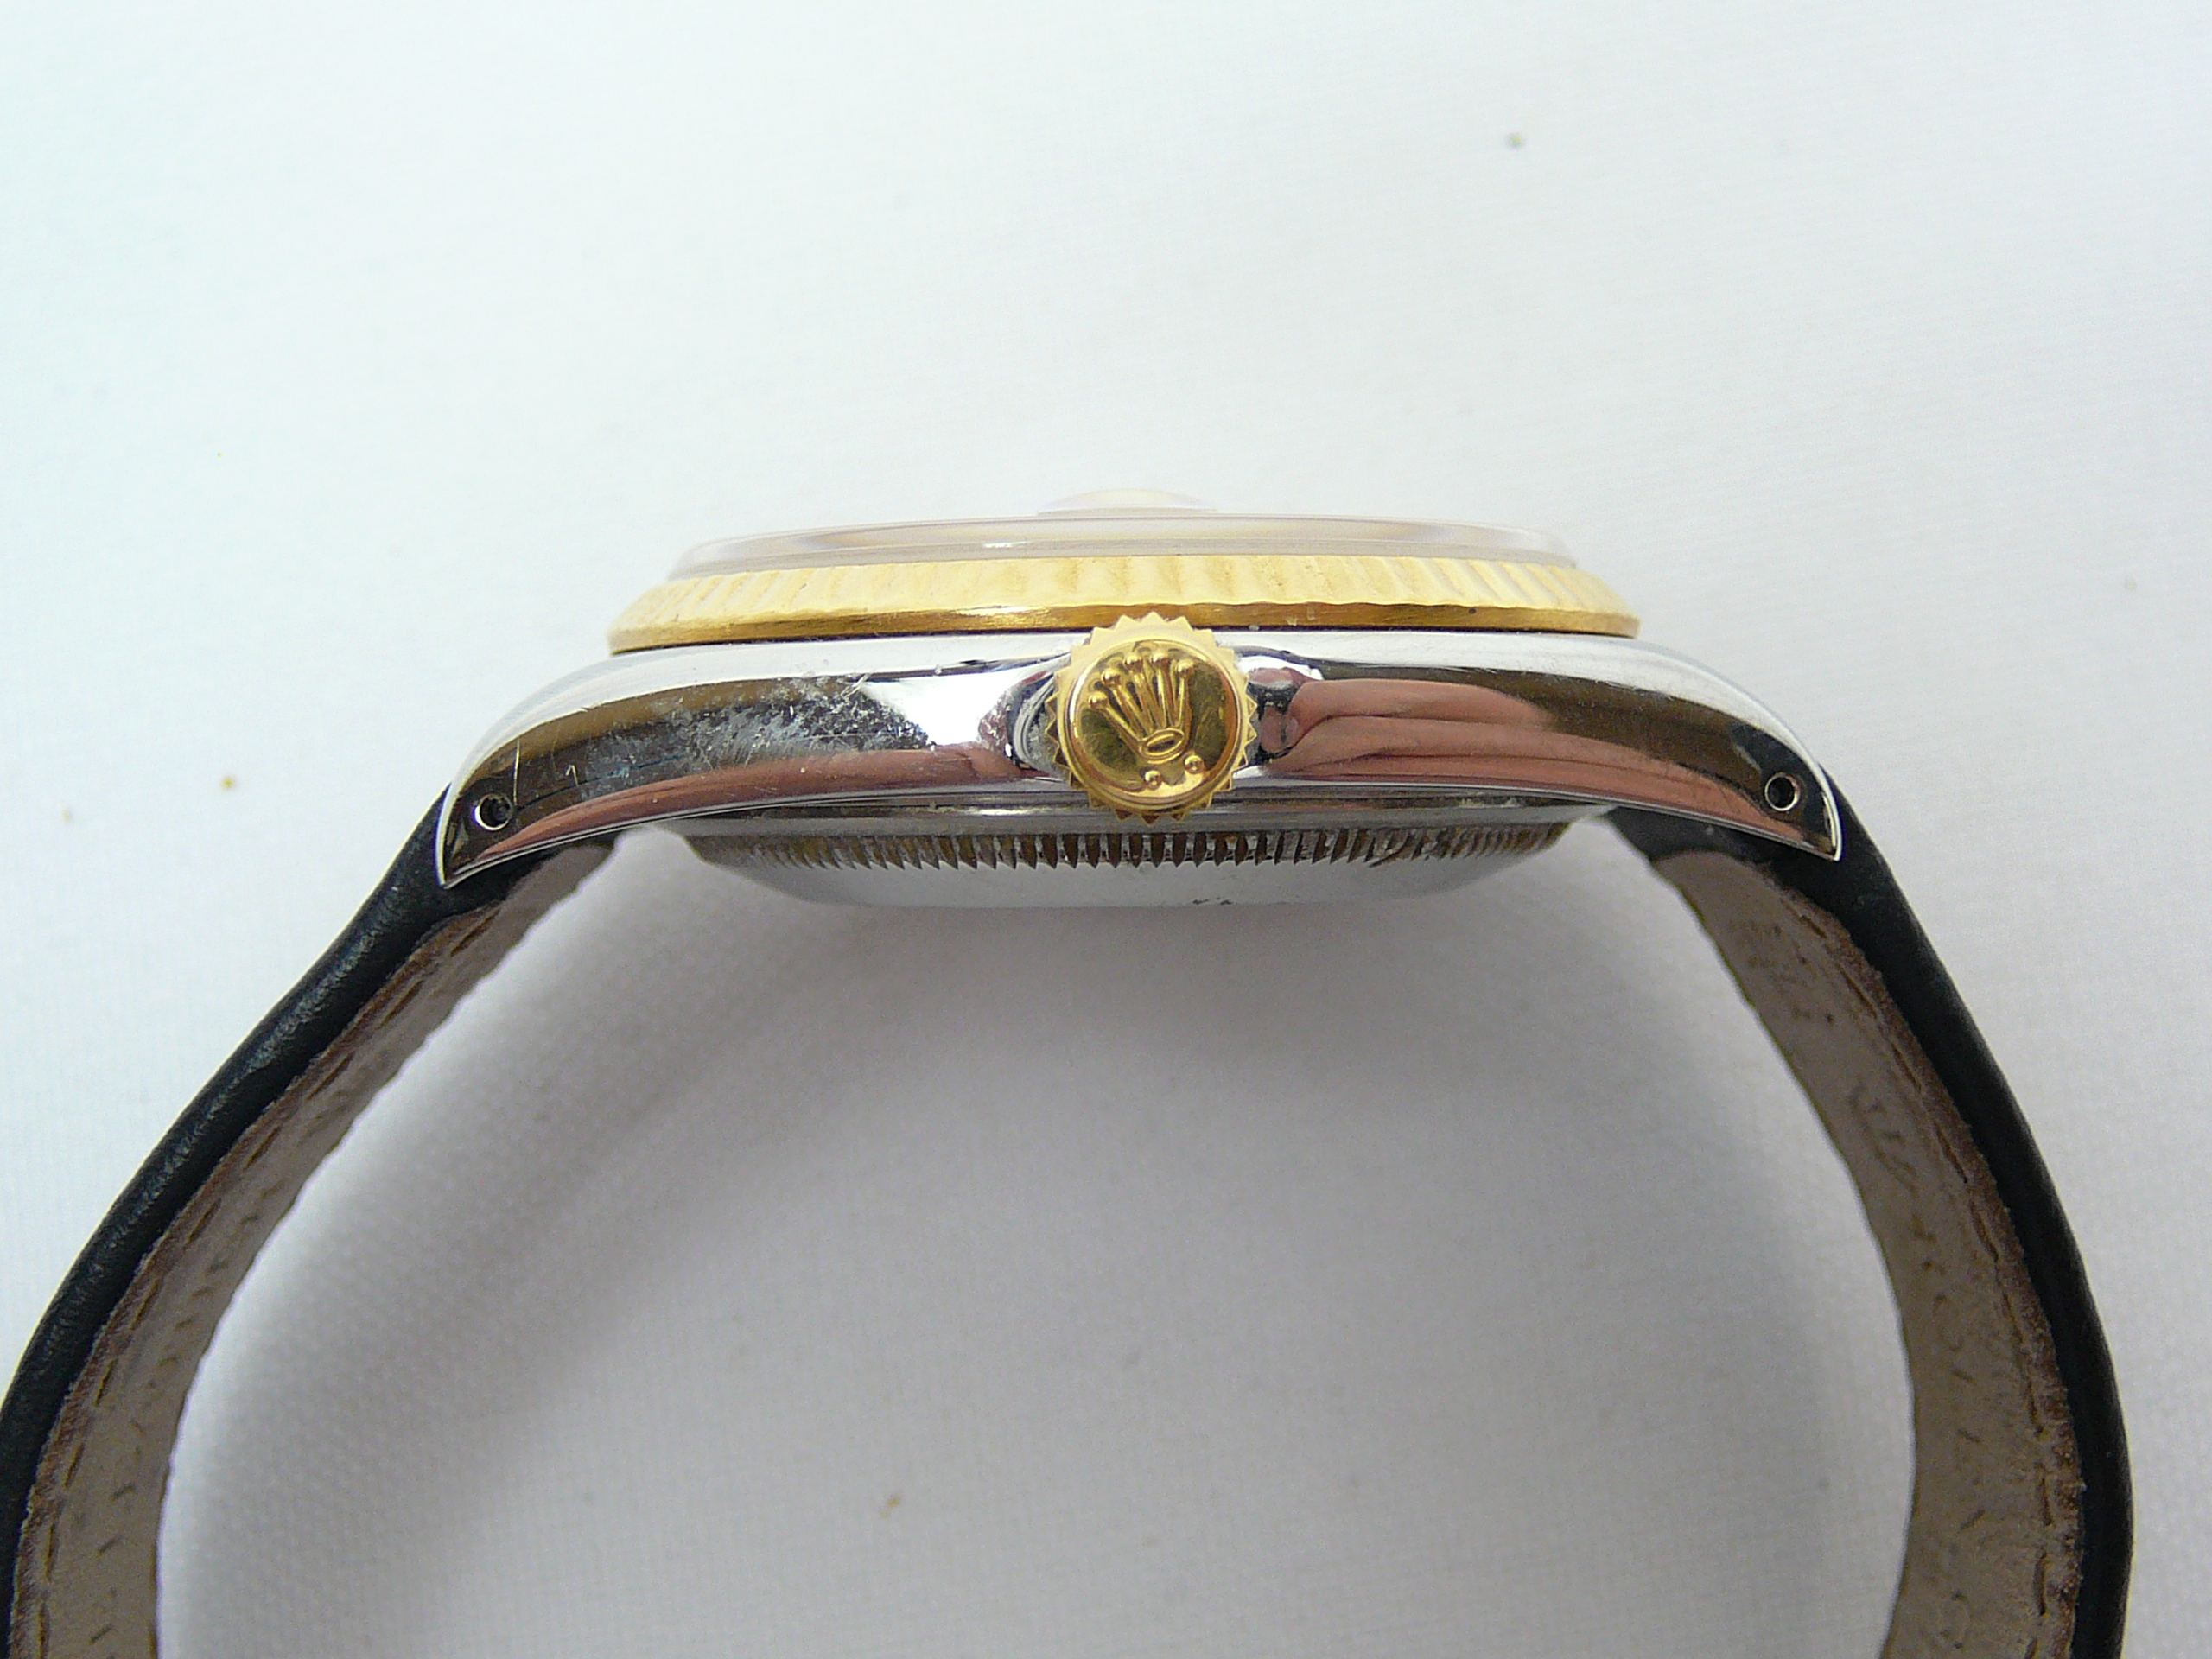 Gents Rolex Wrist Watch - Image 4 of 5